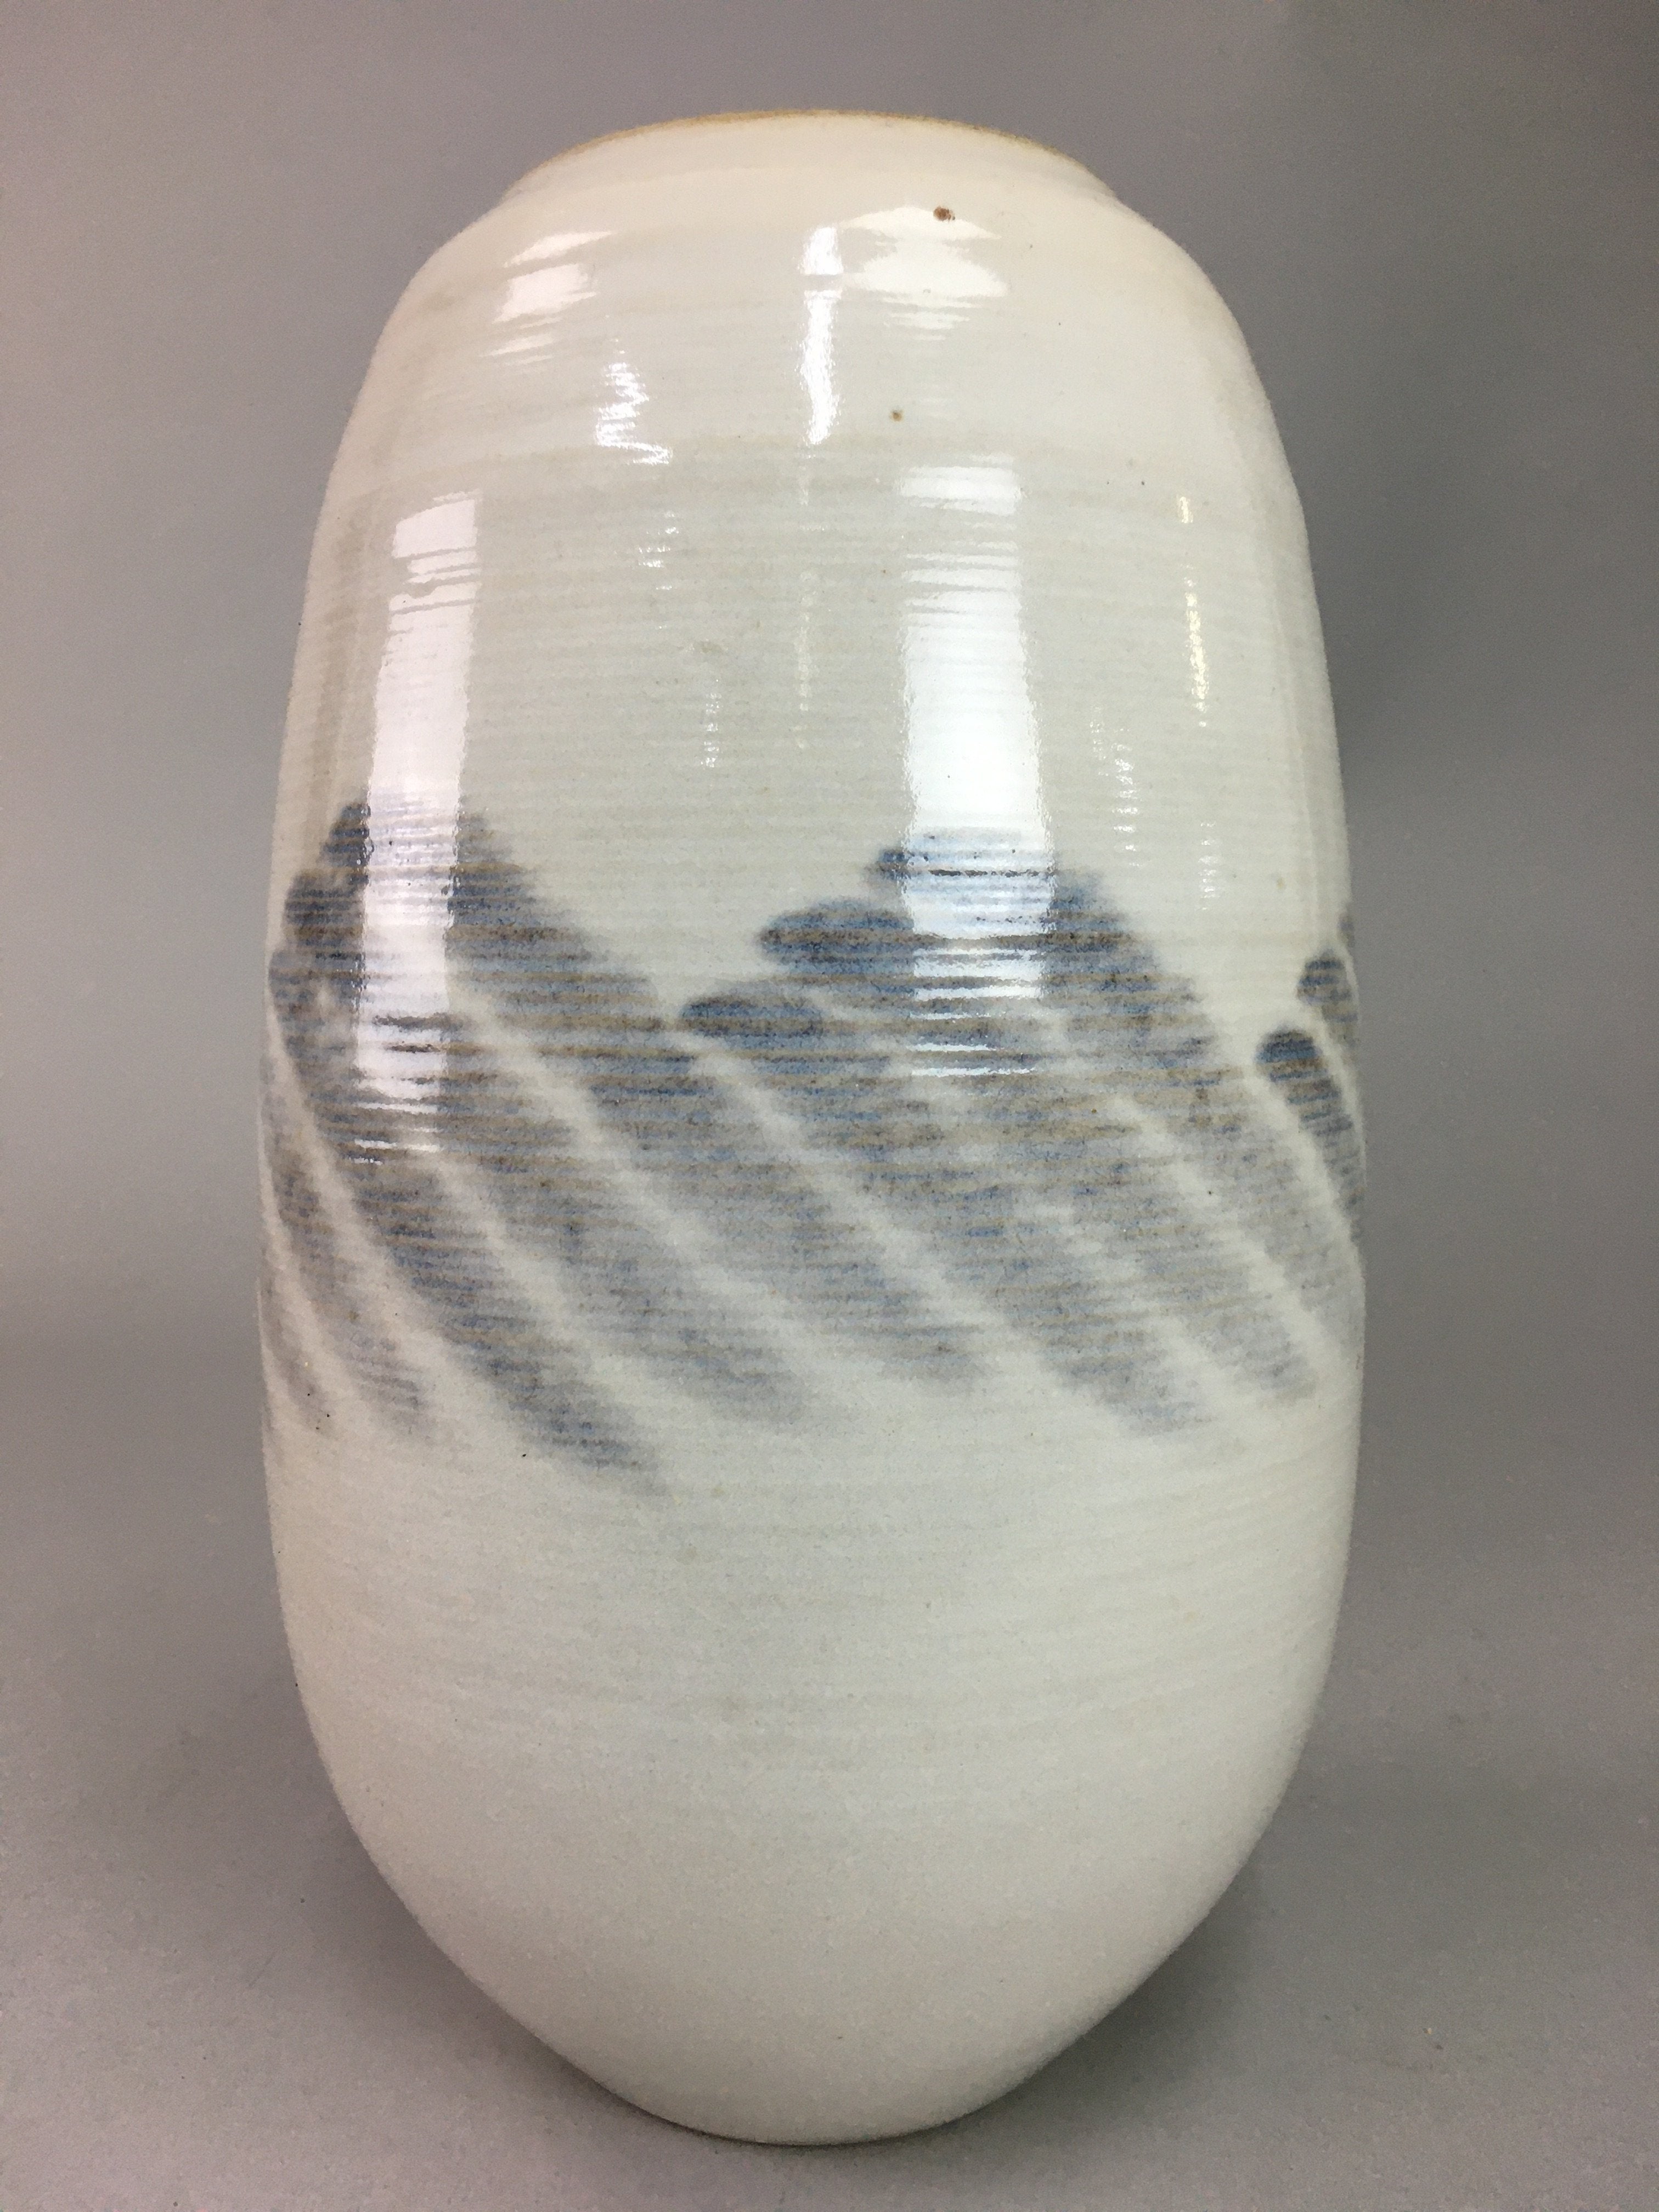 Japanese Ceramic Flower Vase Kabin Vtg Pottery Round White Ikebana FV801